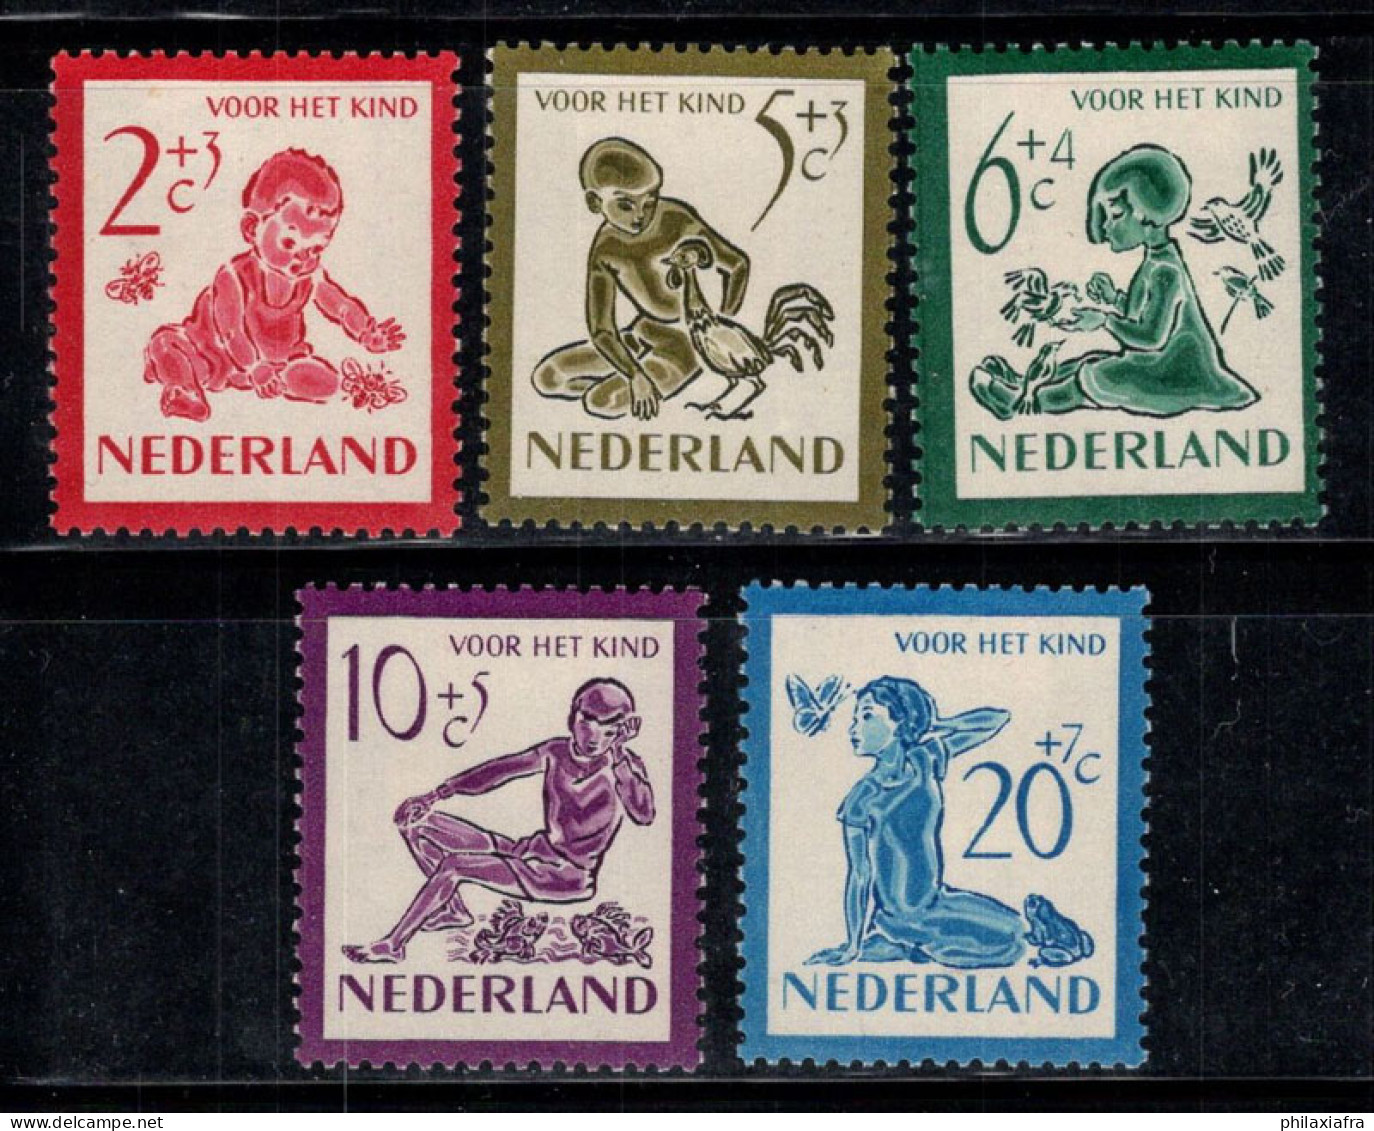 Pays-Bas 1950 Mi. 565-569 Neuf * MH 100% Pour Les Enfants - Neufs